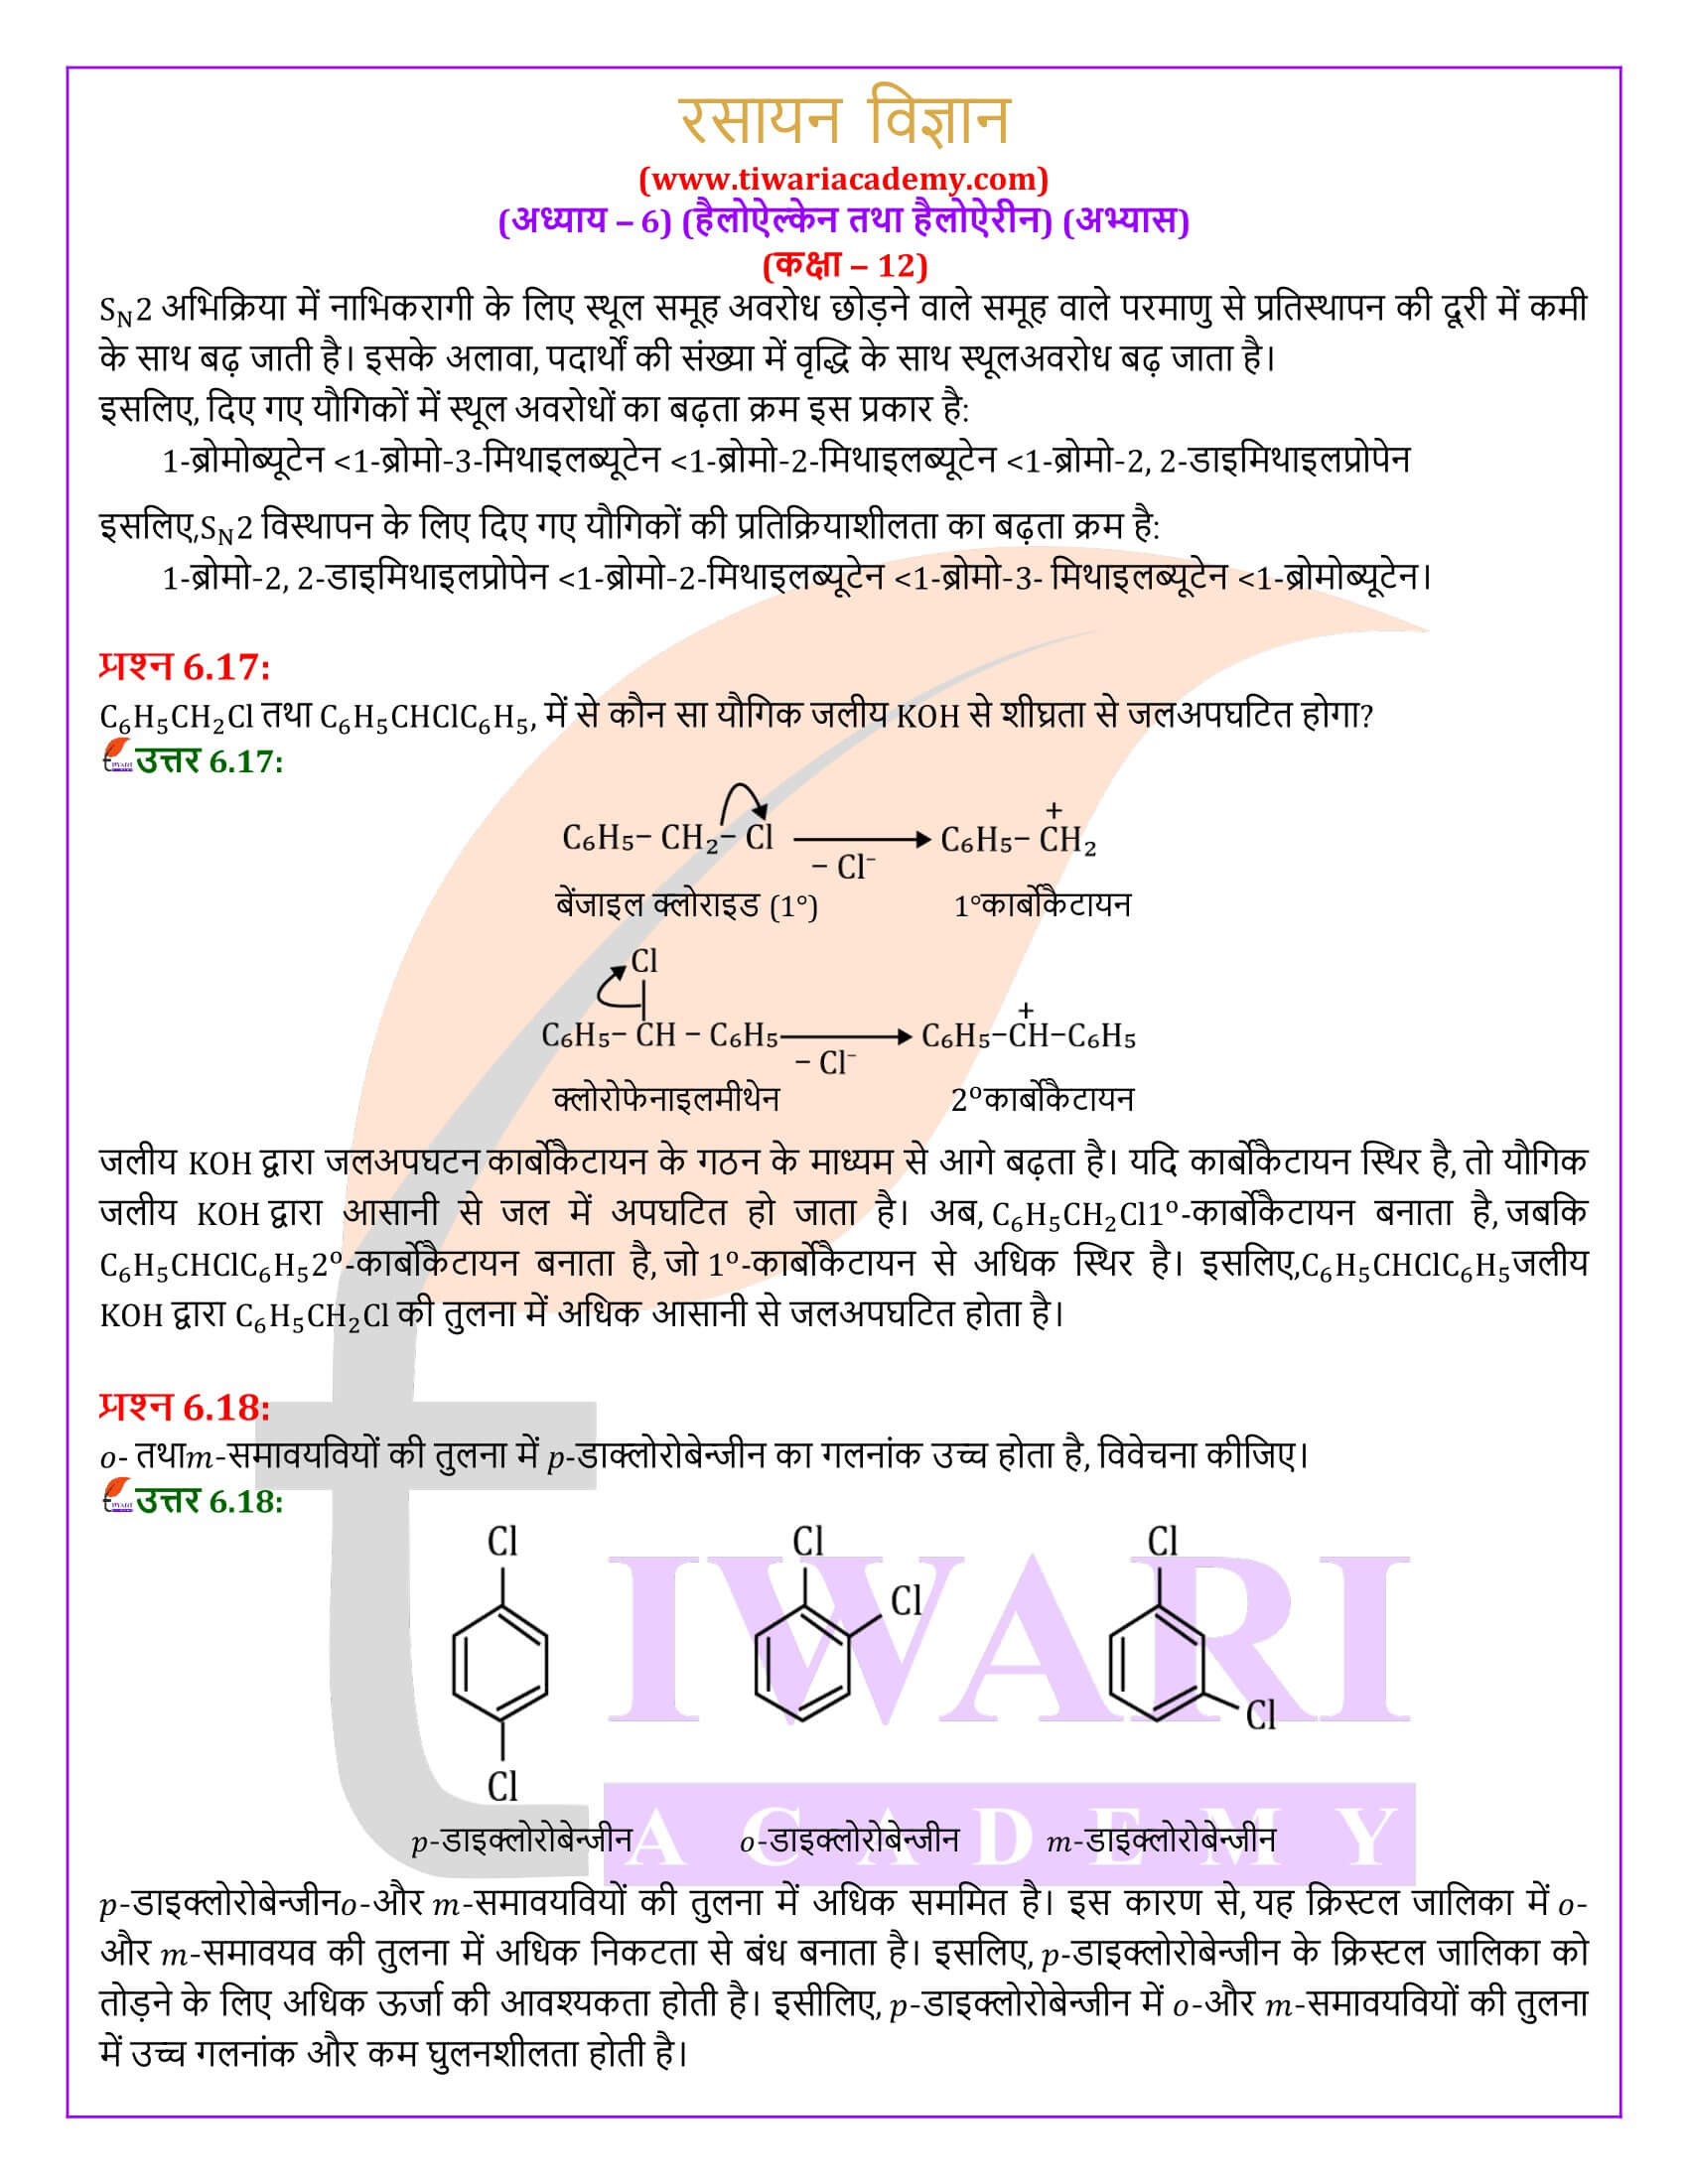 कक्षा 12 रसायन विज्ञान अध्याय 6 के हल हिंदी मीडियम में